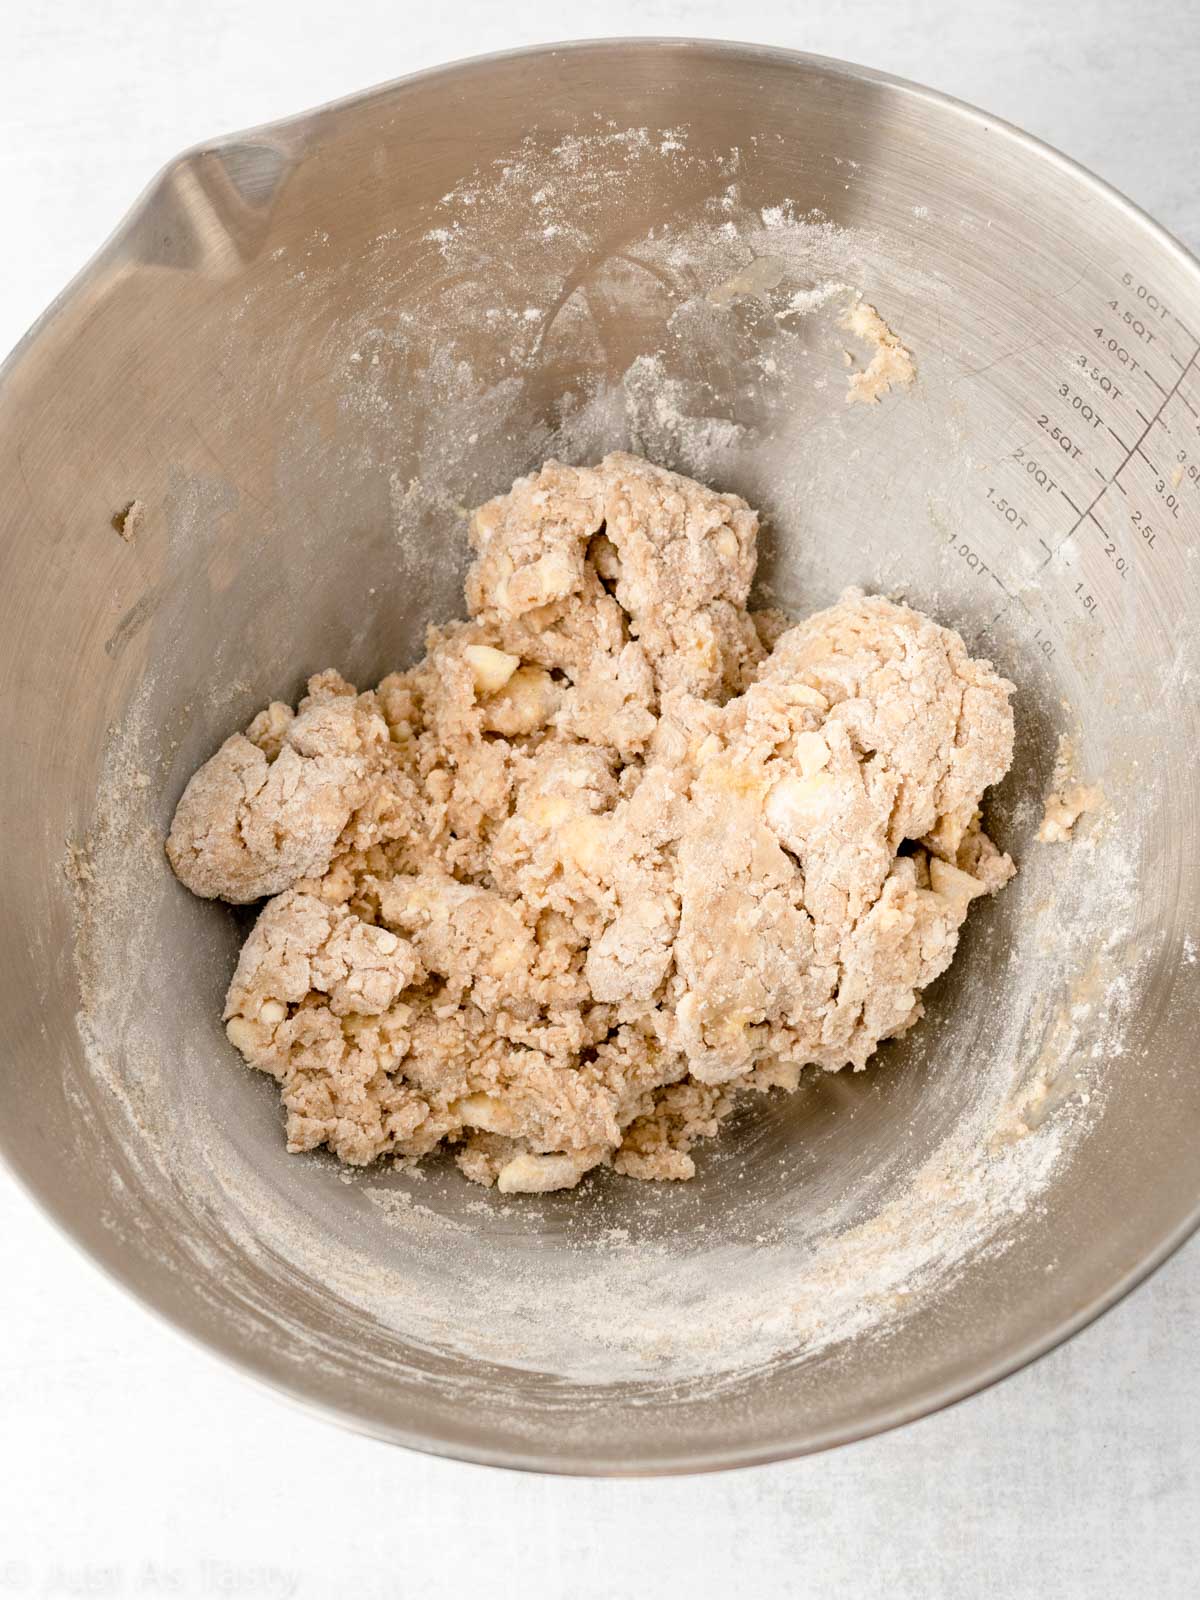 Scone dough in a bowl.